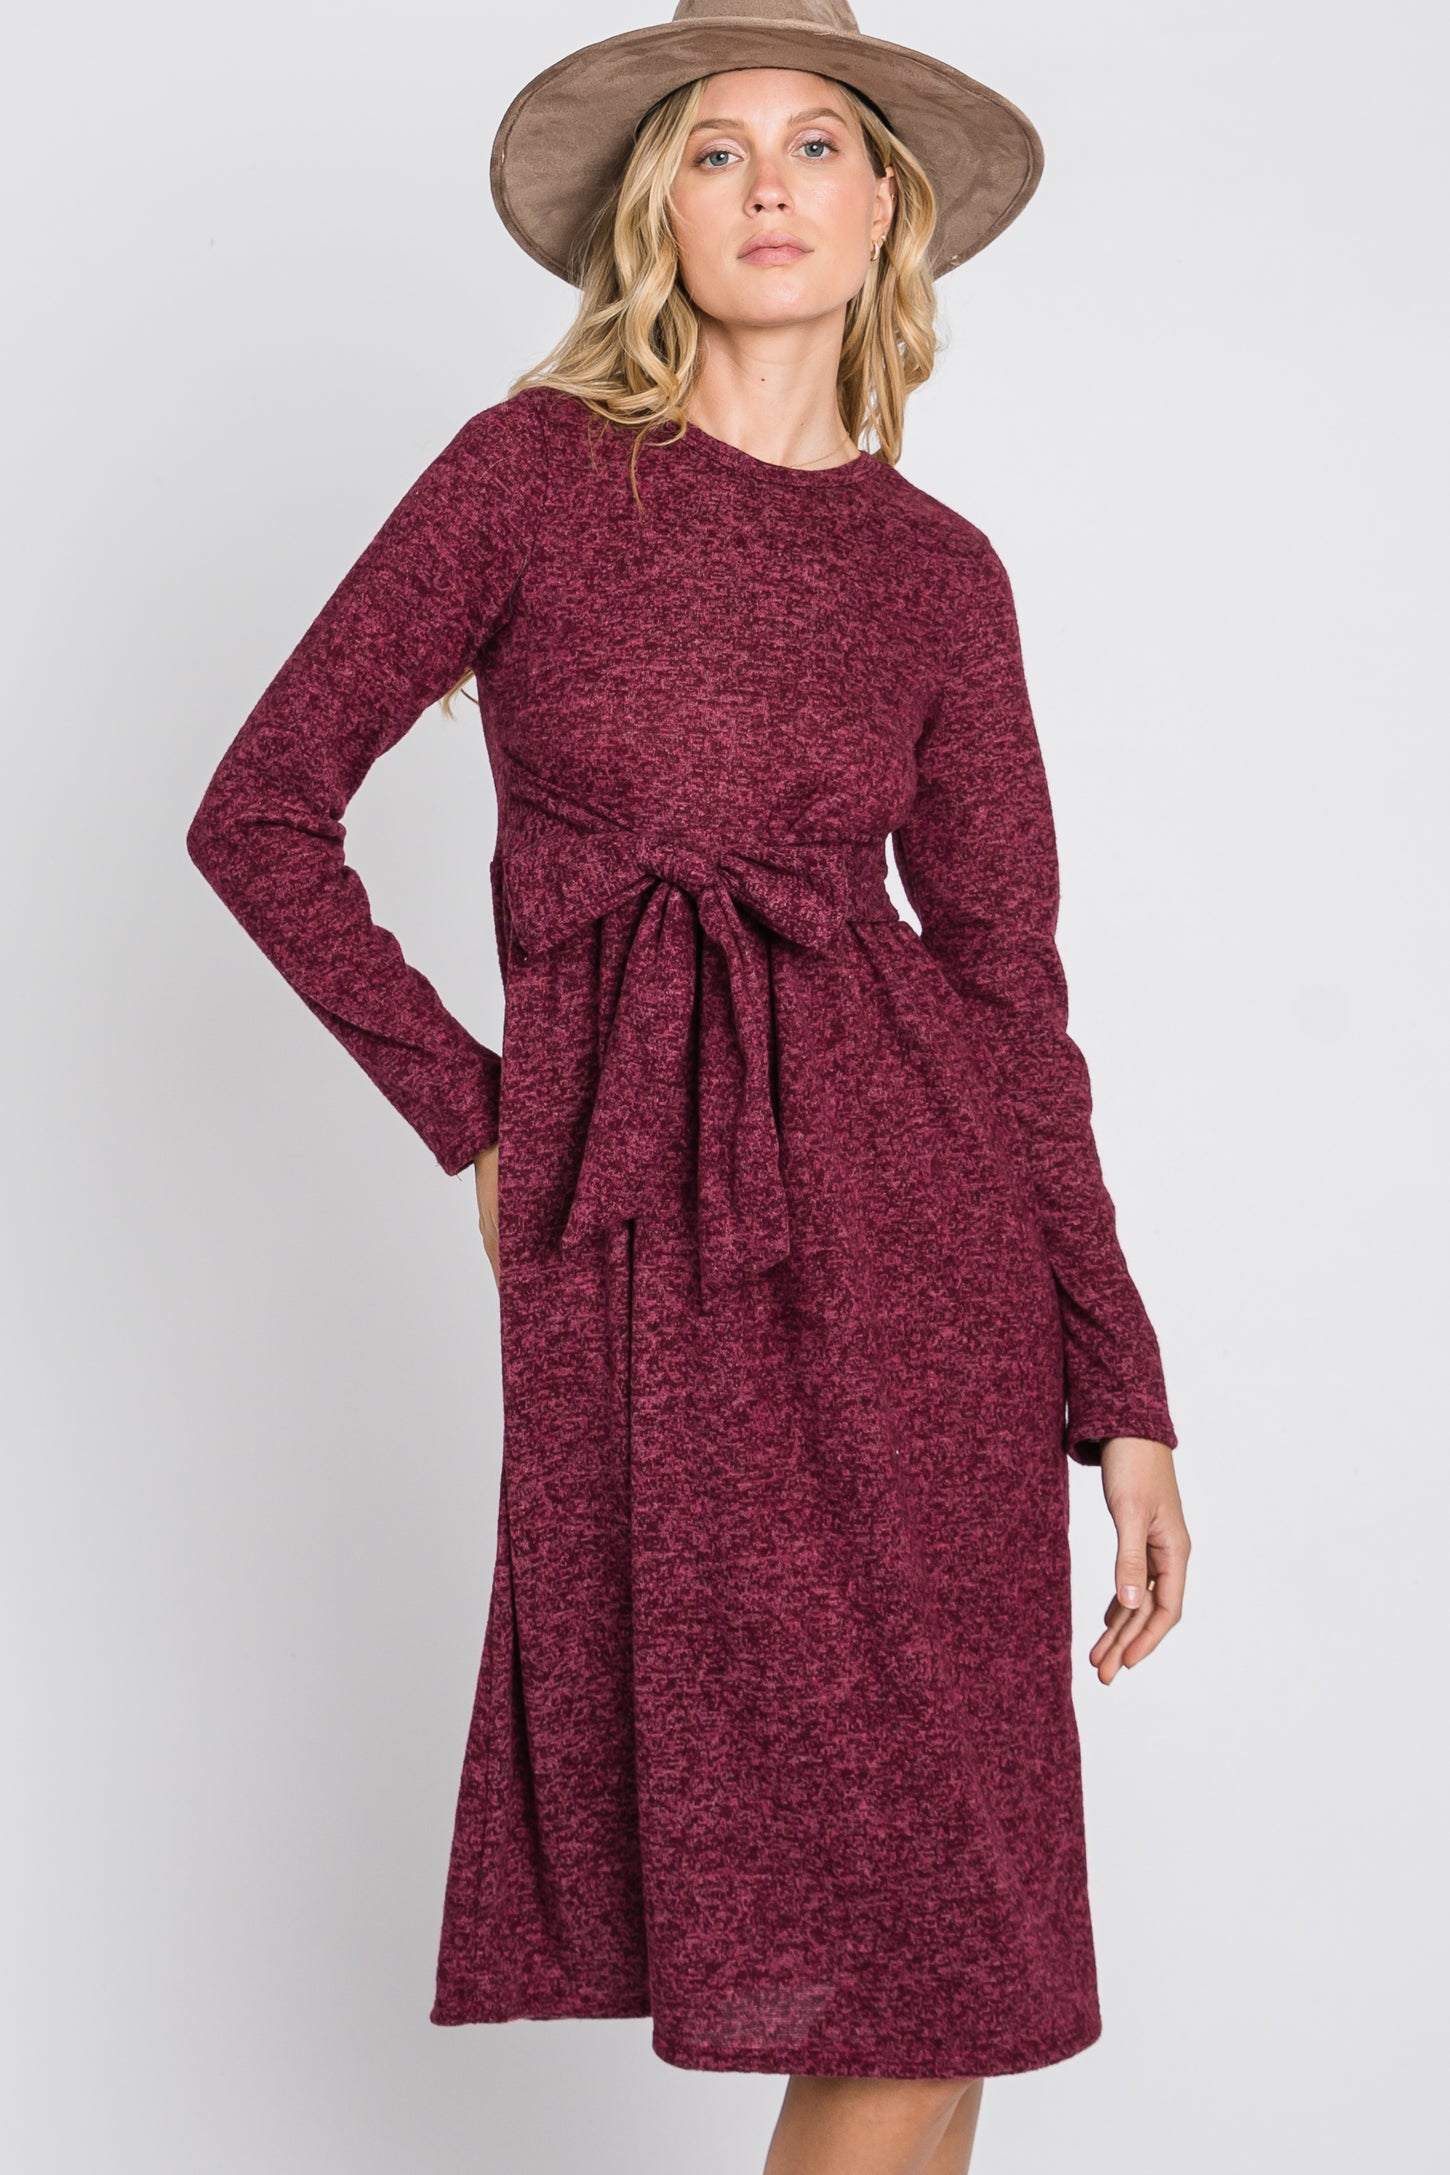 Burgundy Brushed Heathered Long Sleeve Dress